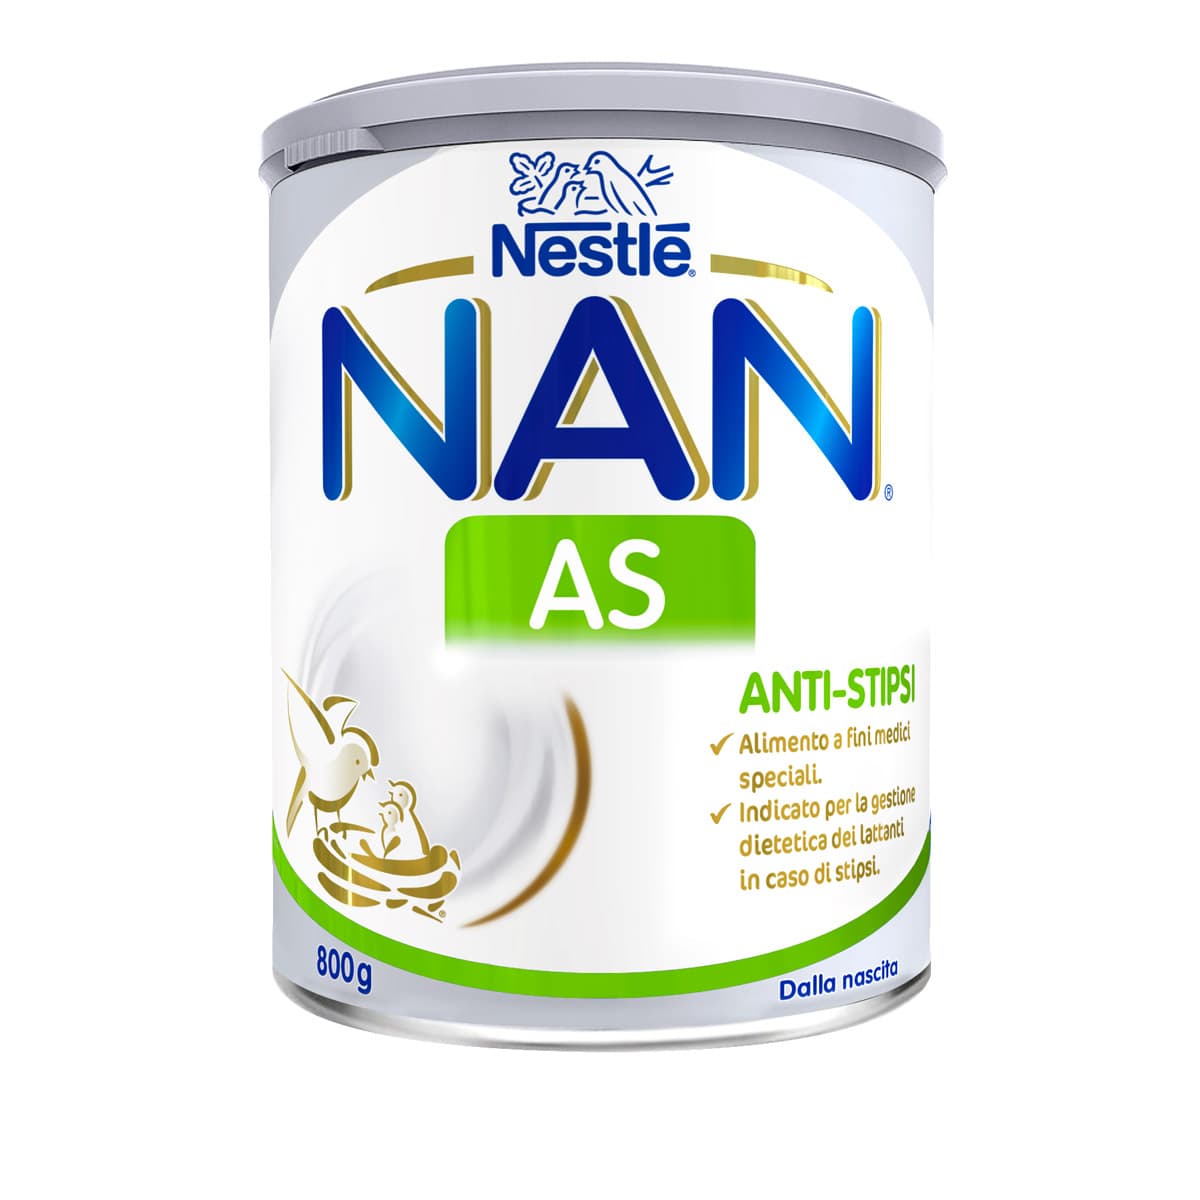 Nestlé NAN AS Anti-Stipsi 800 g. Alimento a fini medici speciali. Dalla nascita